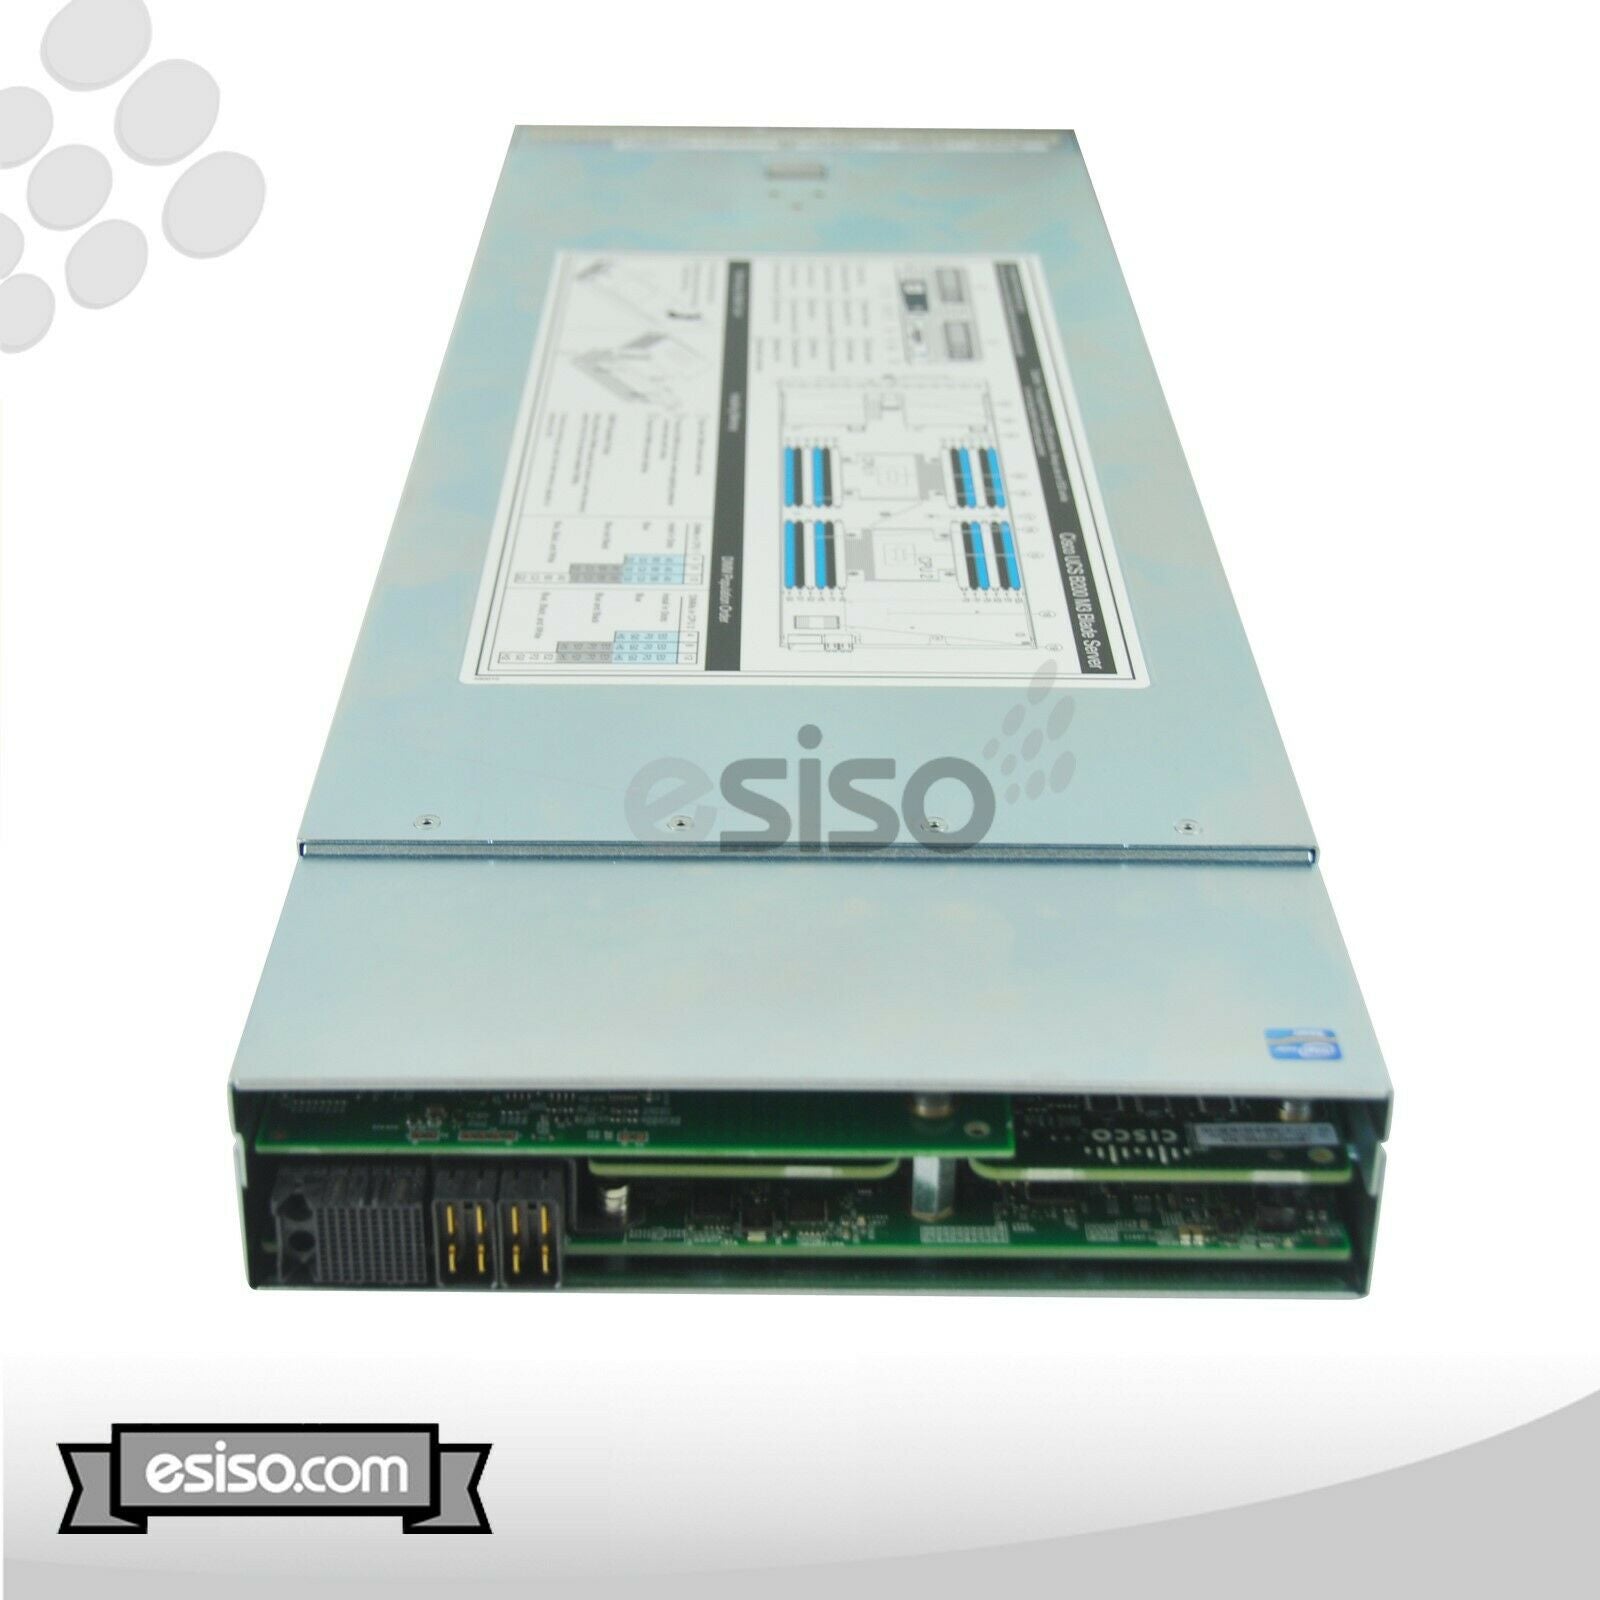 CISCO UCS 5108 CHASSIS 8x B200 M3 2x 8C E5-2670 2.6GHz 256GB RAM 2x 300GB SAS